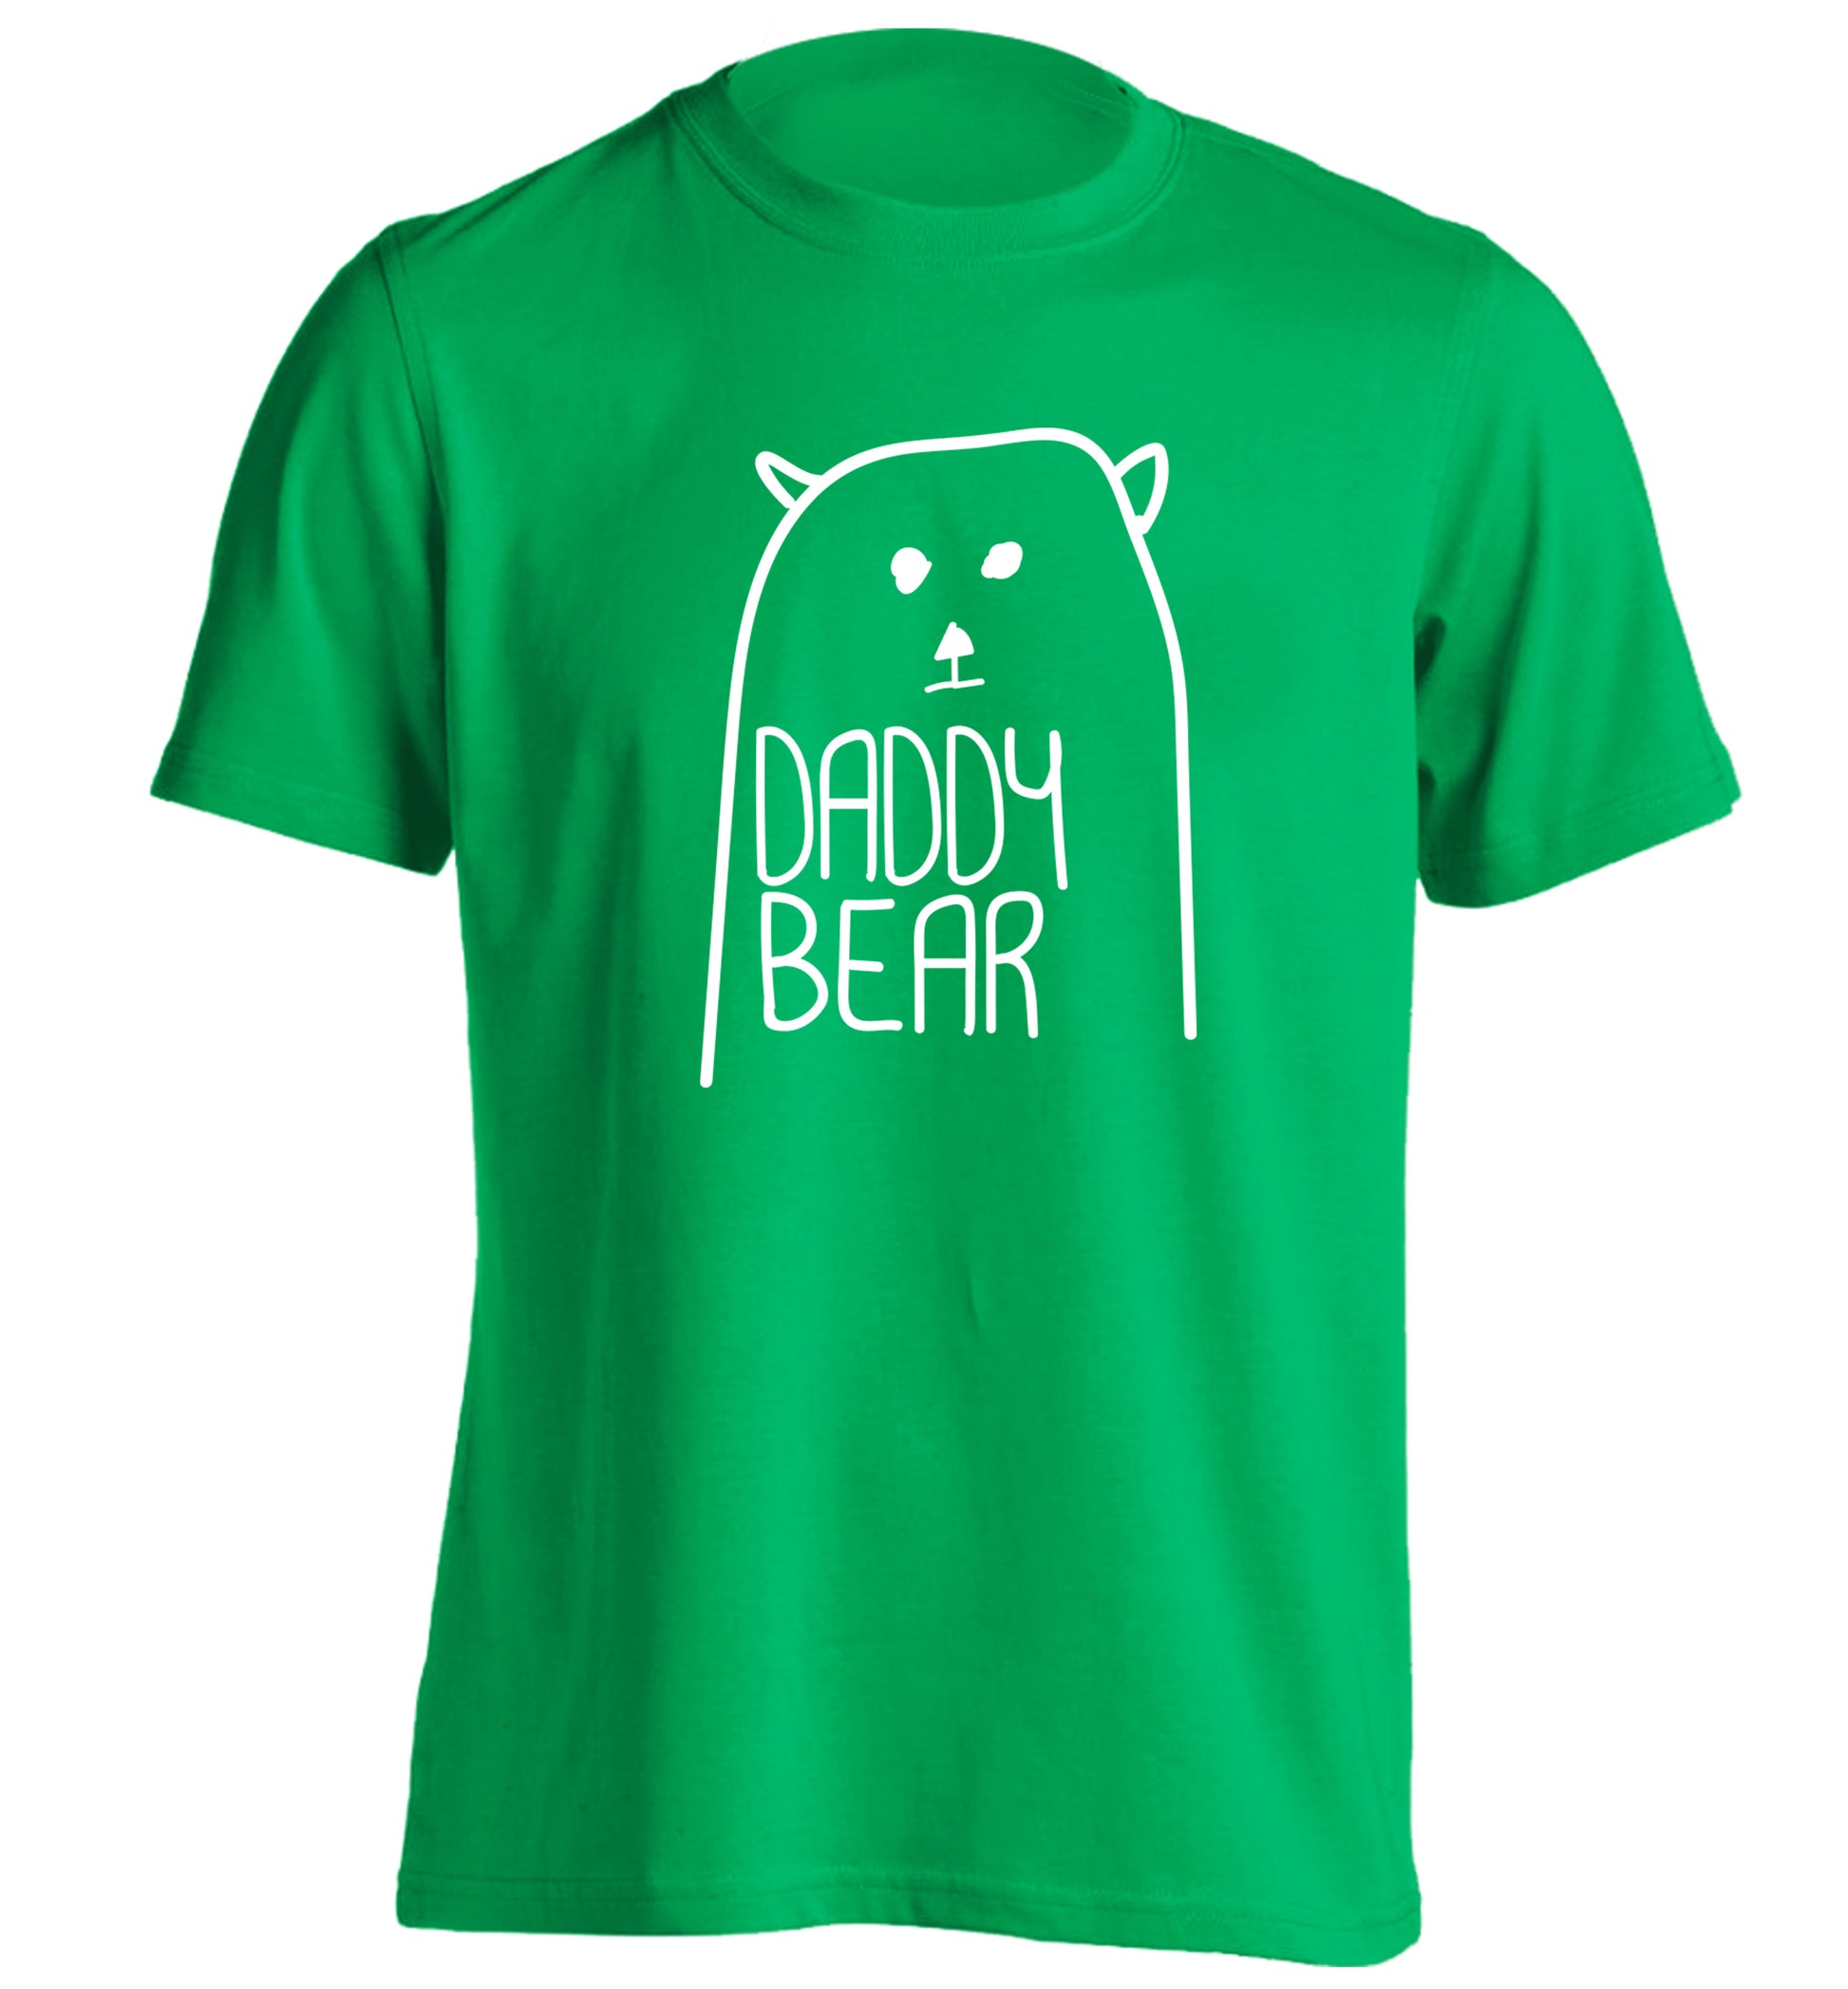 Daddy bear adults unisex green Tshirt 2XL